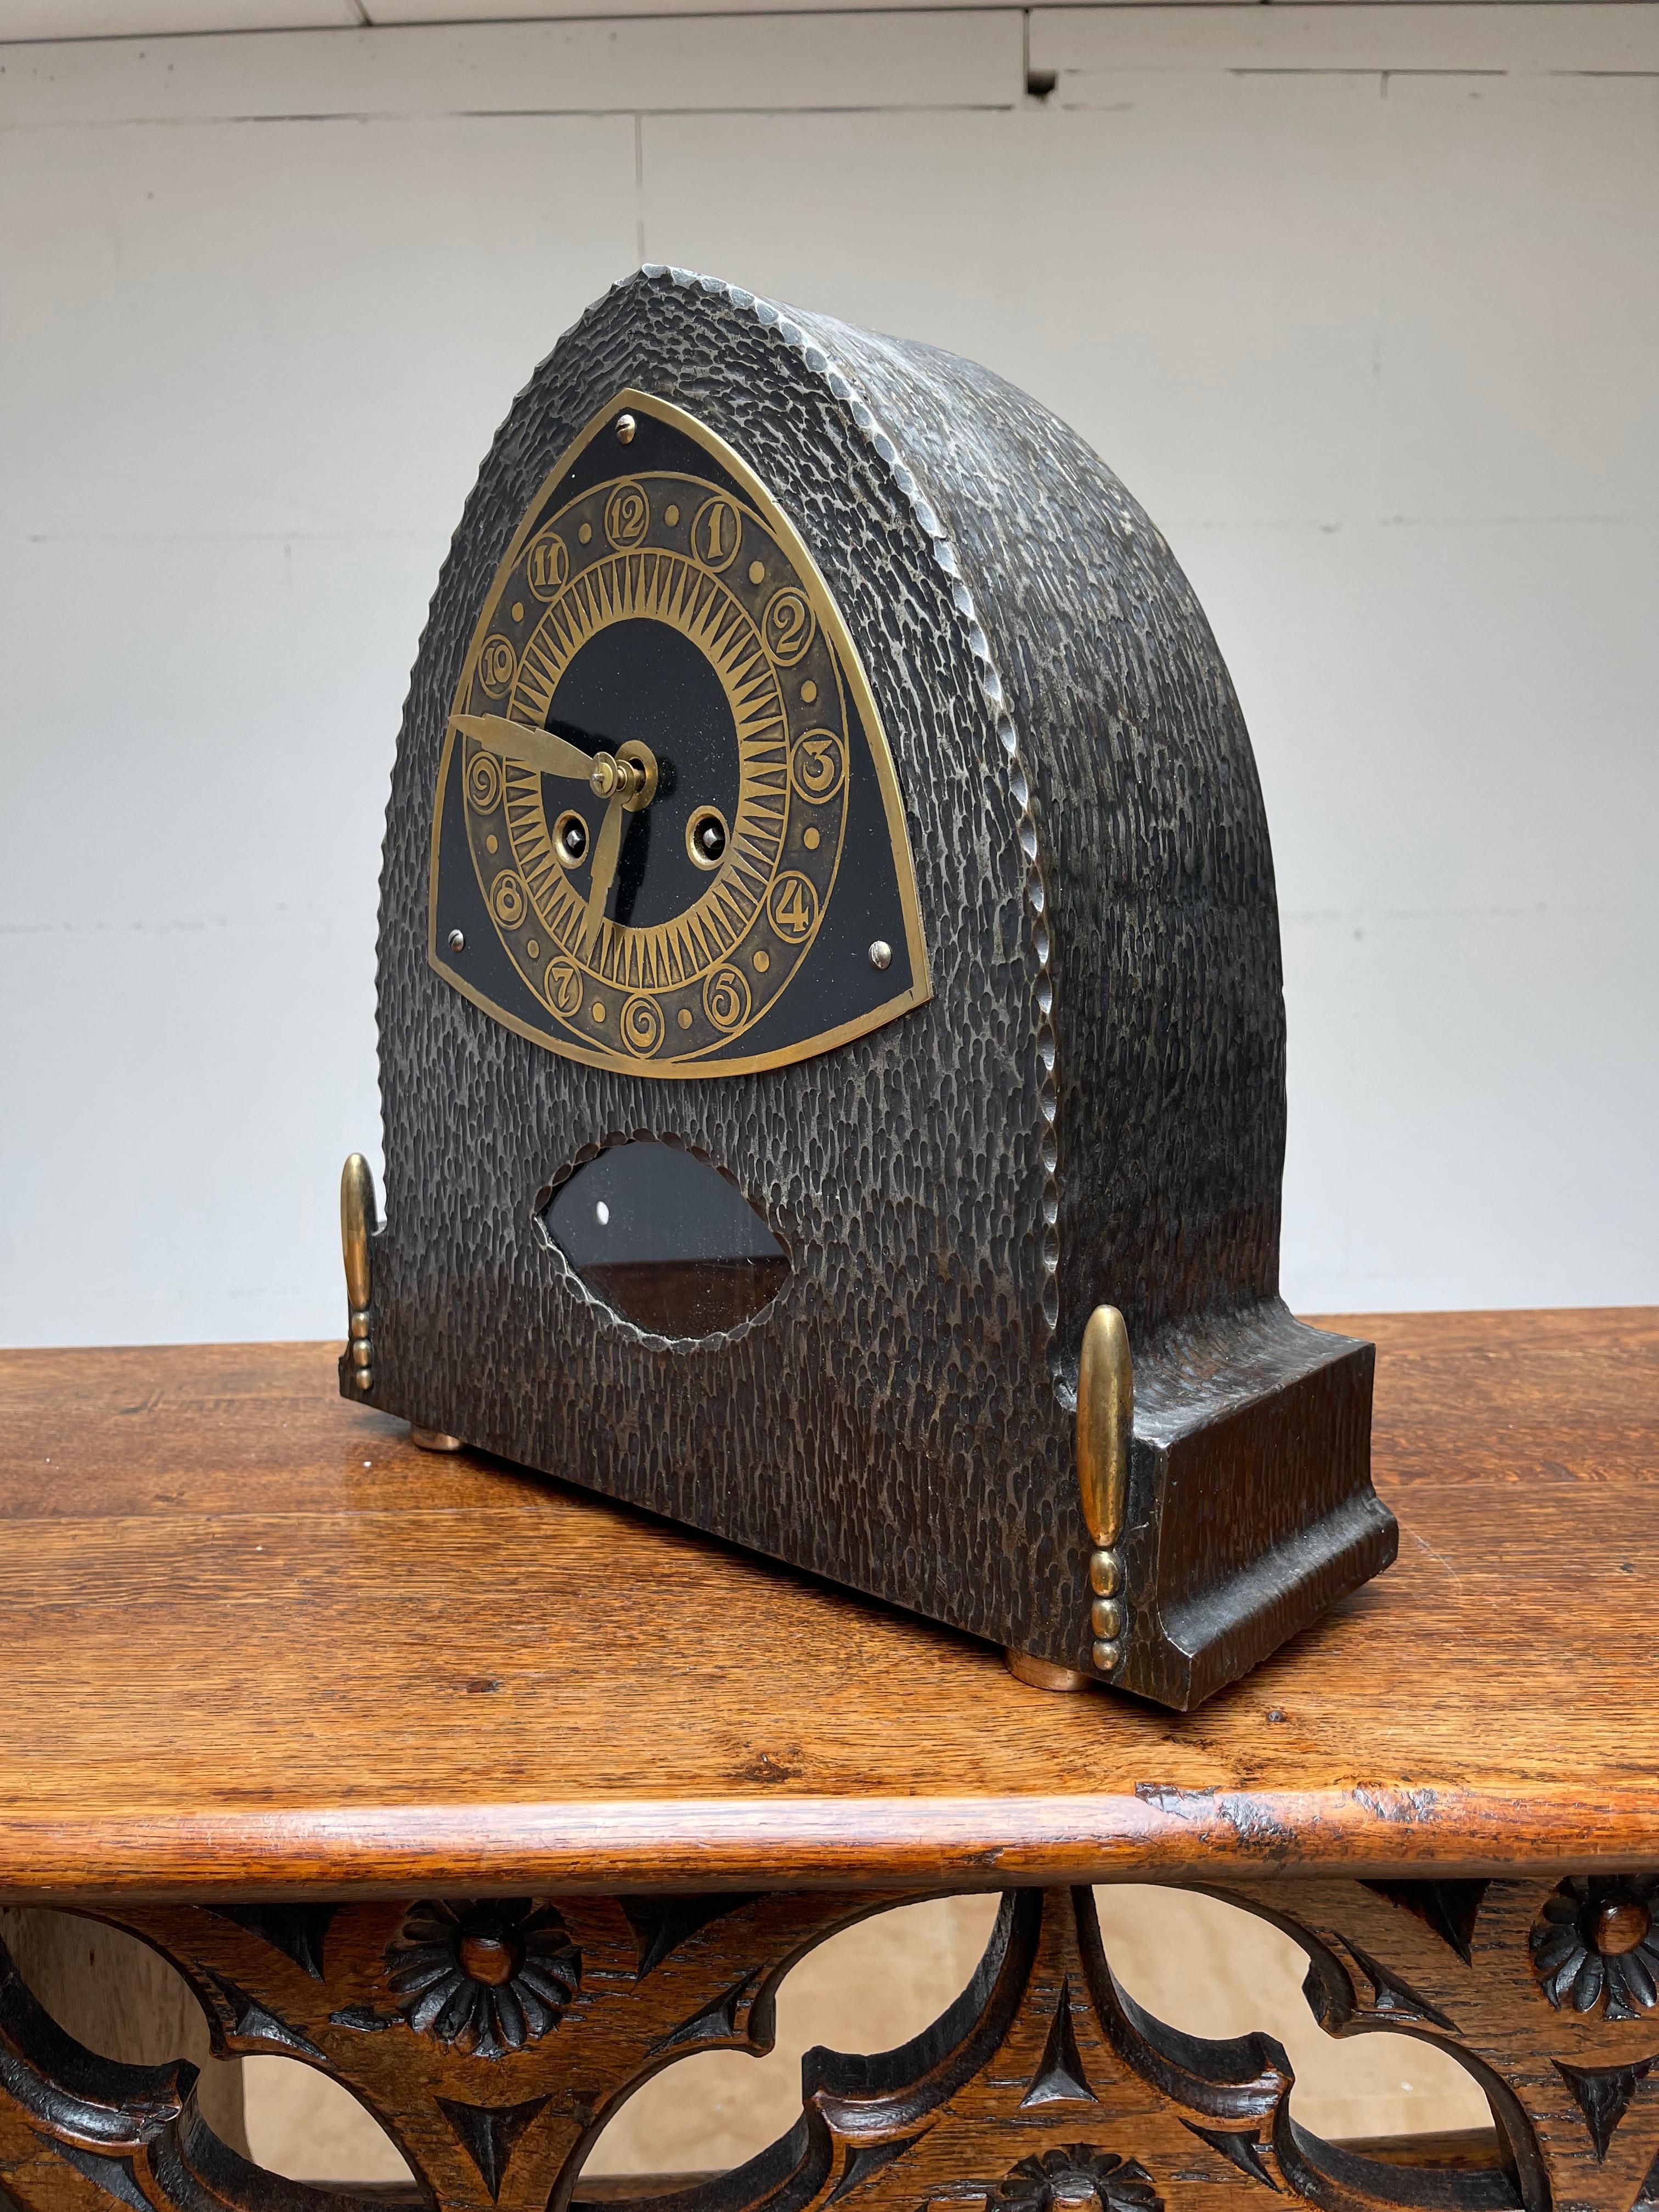 Belle horloge Arts & Crafts en bon état de marche, estampillée 'war materials'.

Cette horloge allemande datant de l'époque de la guerre (ou de l'entre-deux-guerres) est une autre de nos récentes trouvailles. Après la Première Guerre mondiale, il y